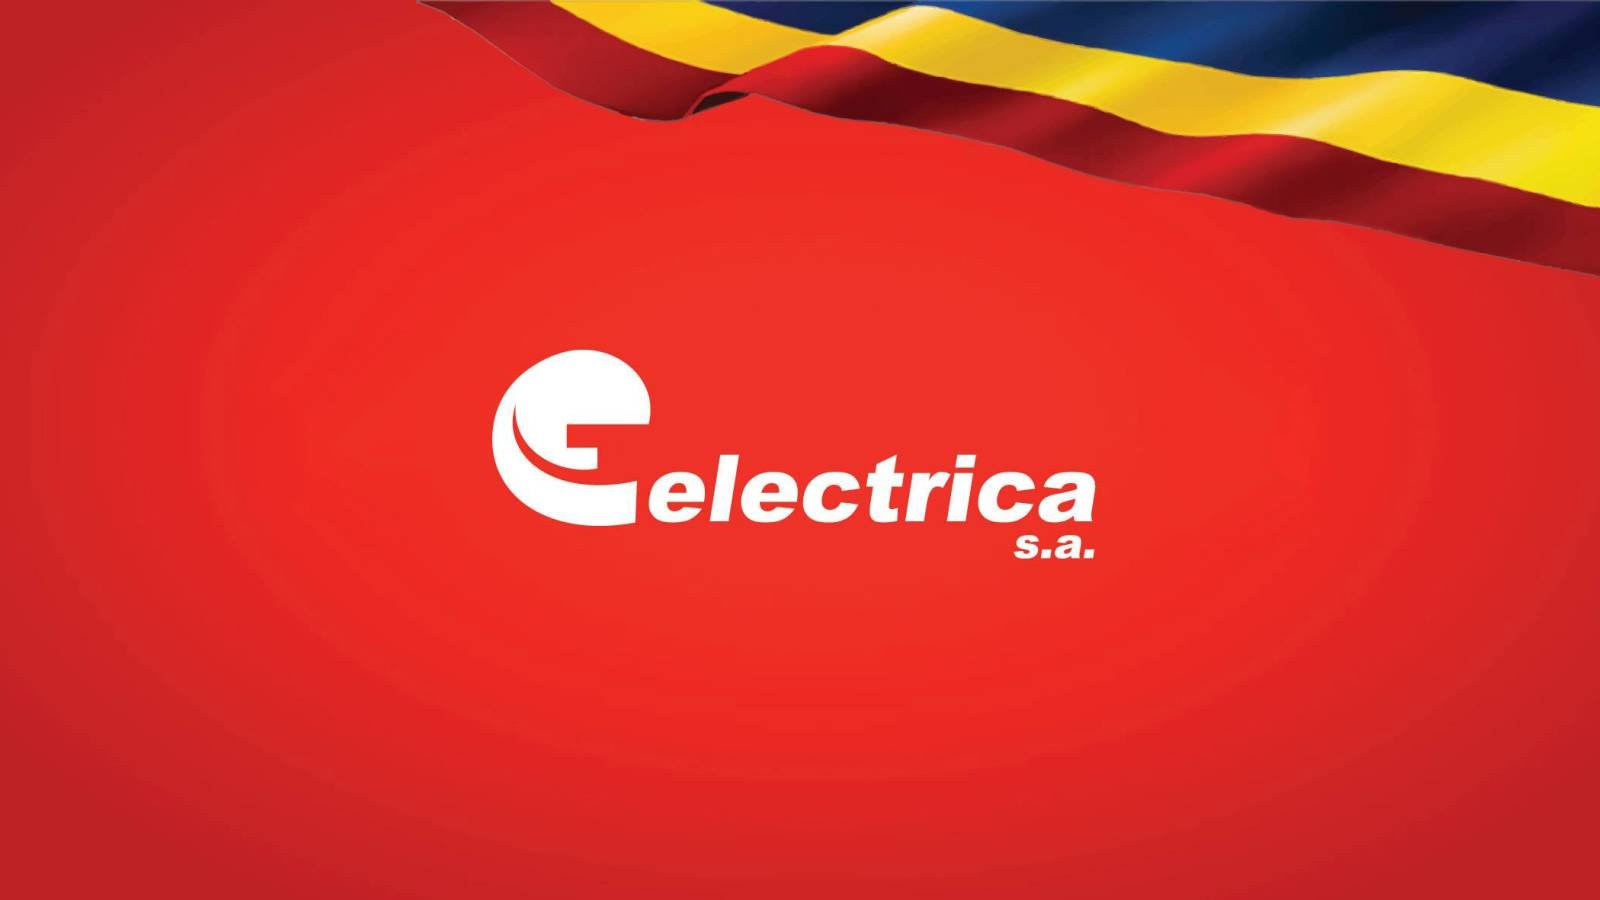 WICHTIGE ELEKTRIZITÄTSMASSNAHMEN Anwendung MILLIONEN Kunden Rumänien